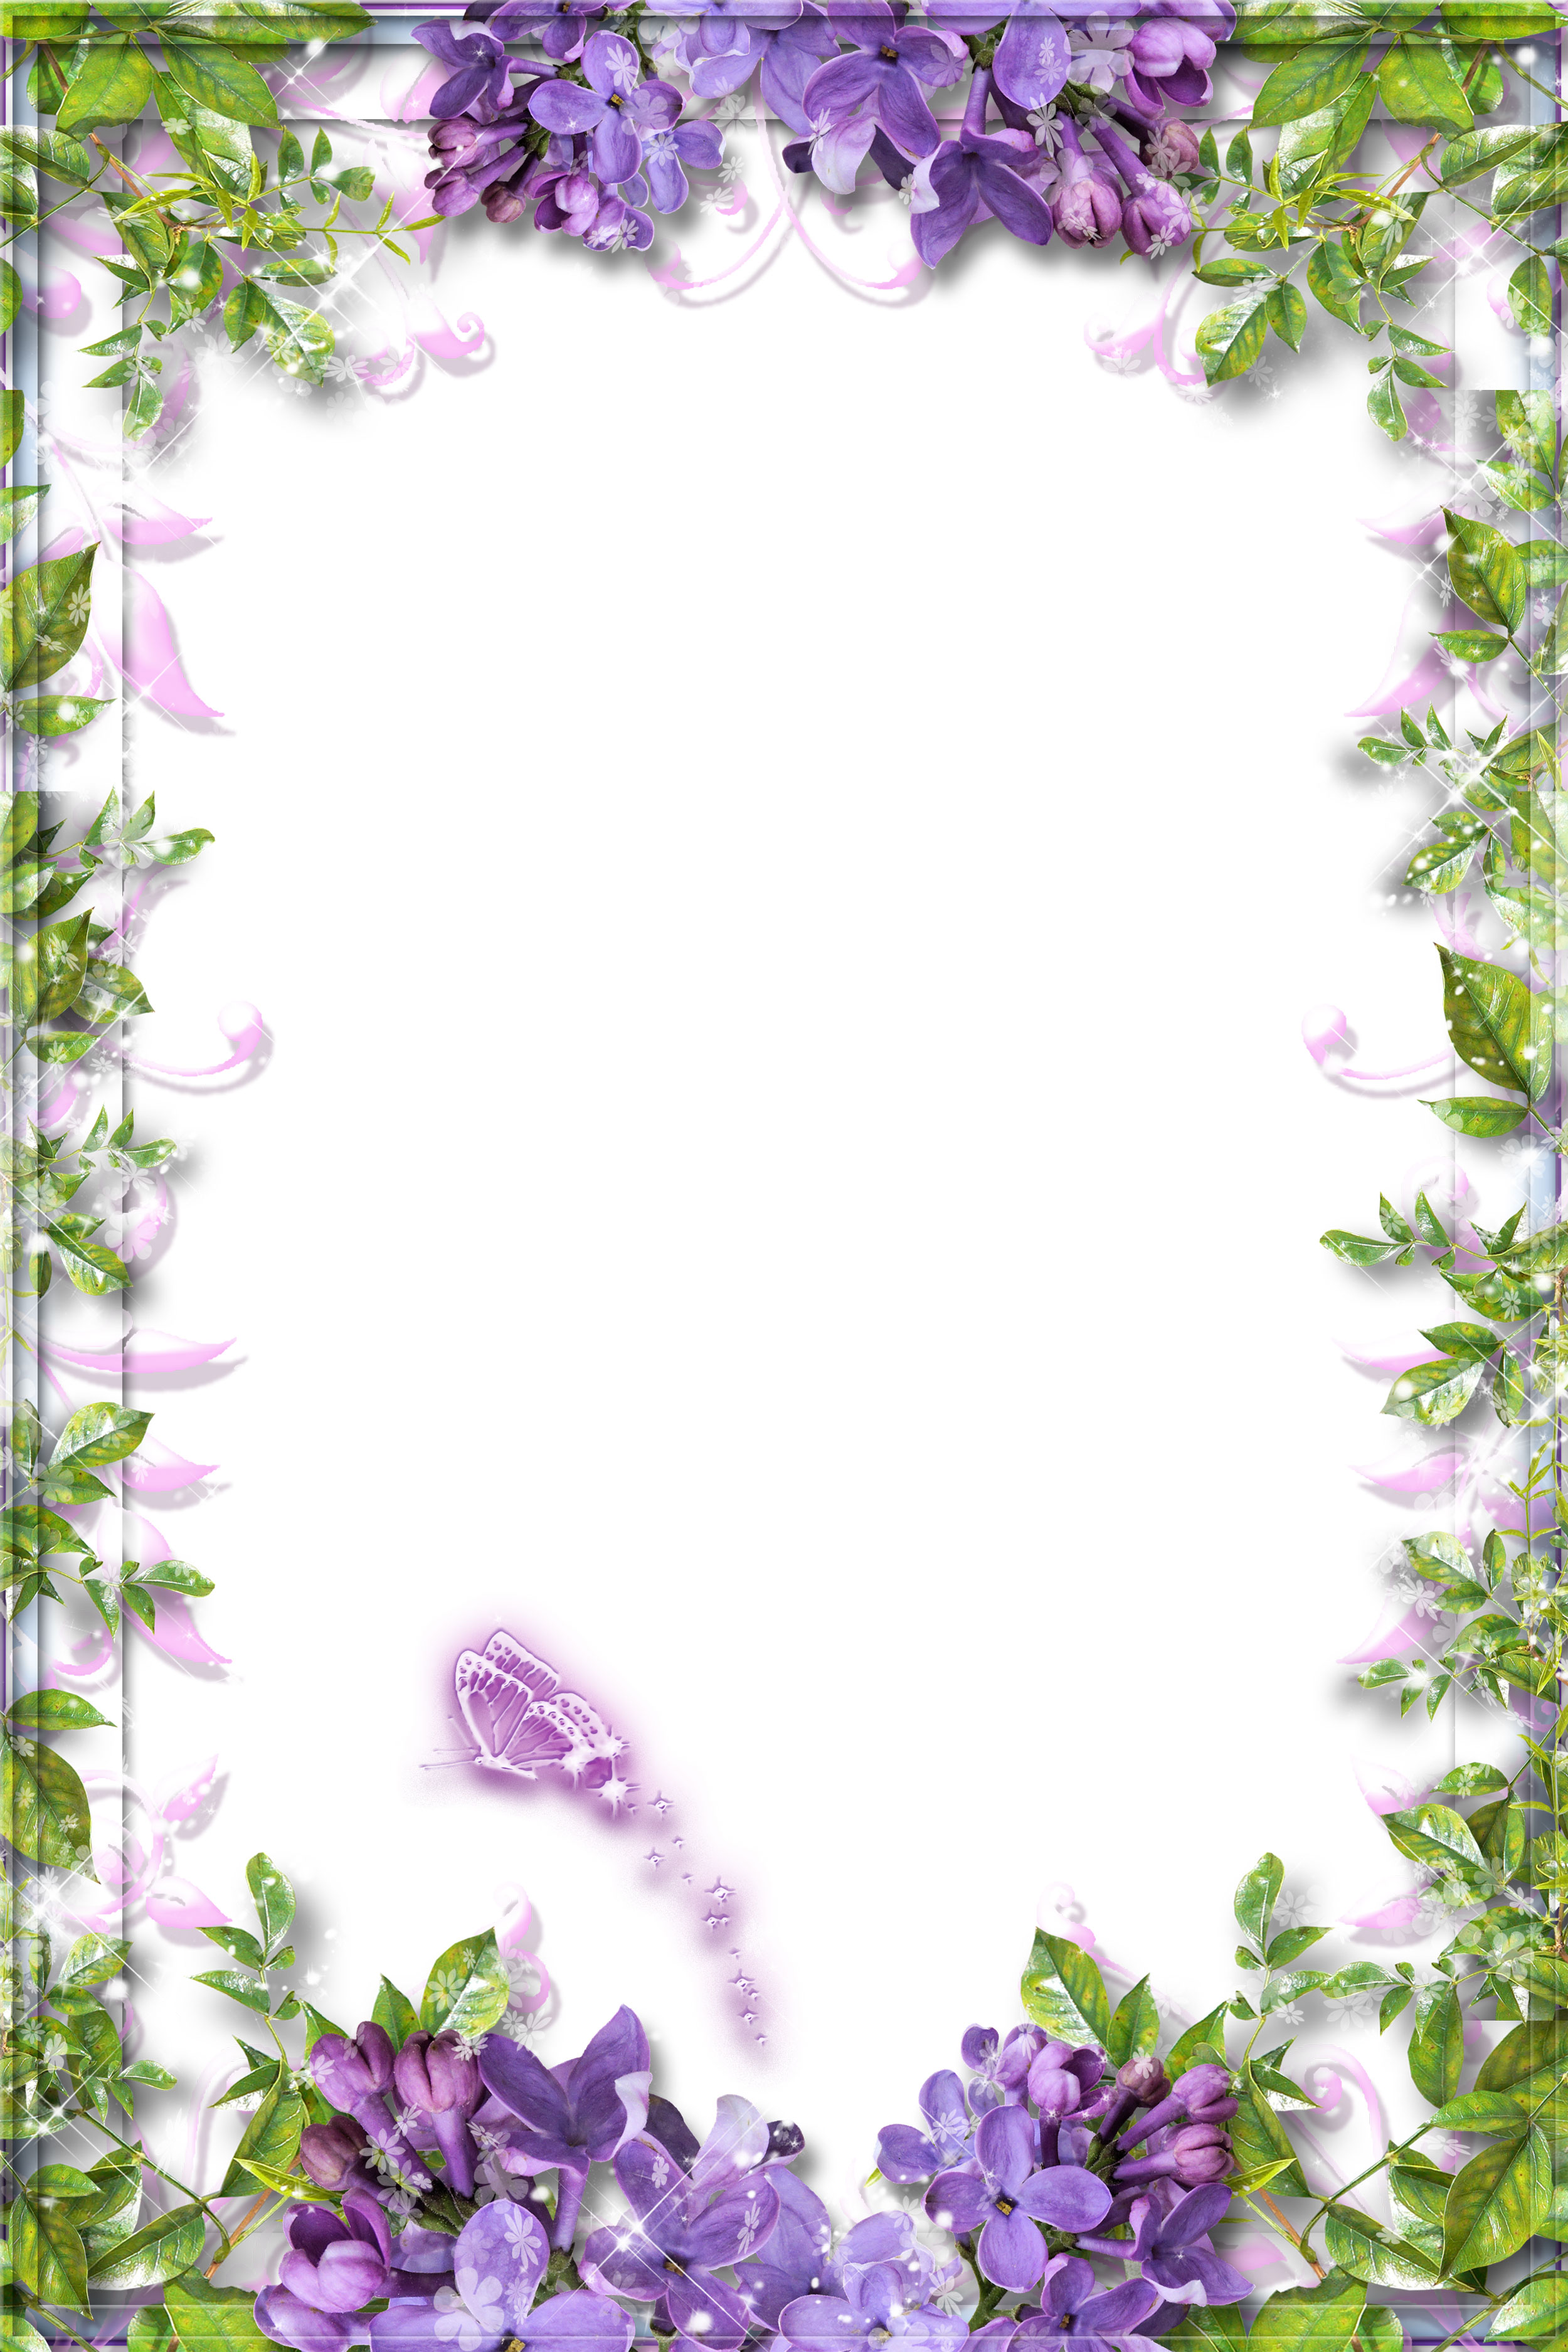 紫色の花のイラスト フリー素材 背景 壁紙no 428 紫 蝶 光彩